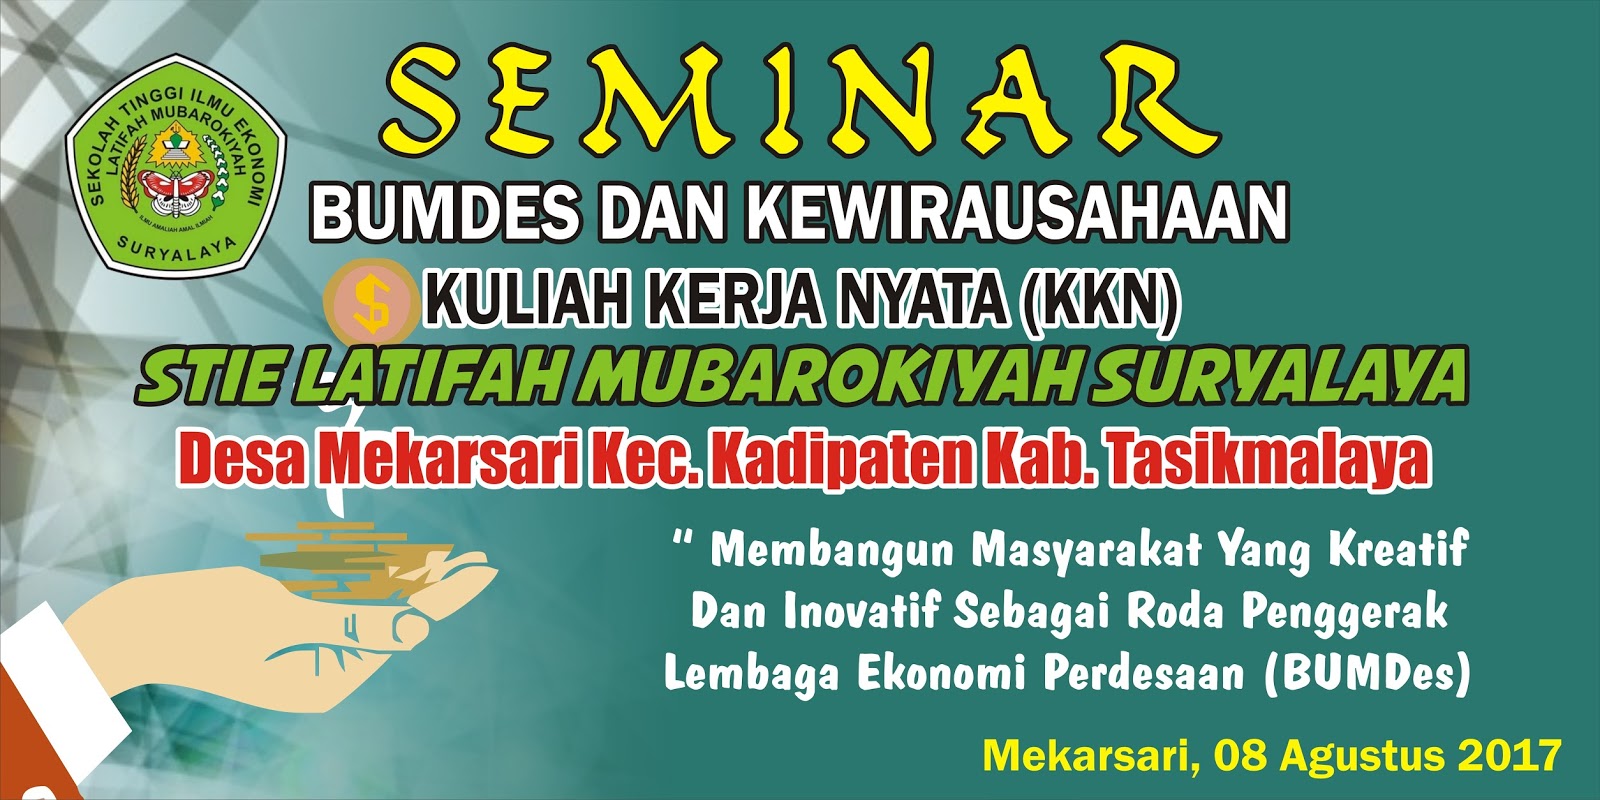 Download Contoh Spanduk Seminar BUMDES.cdr  KARYAKU